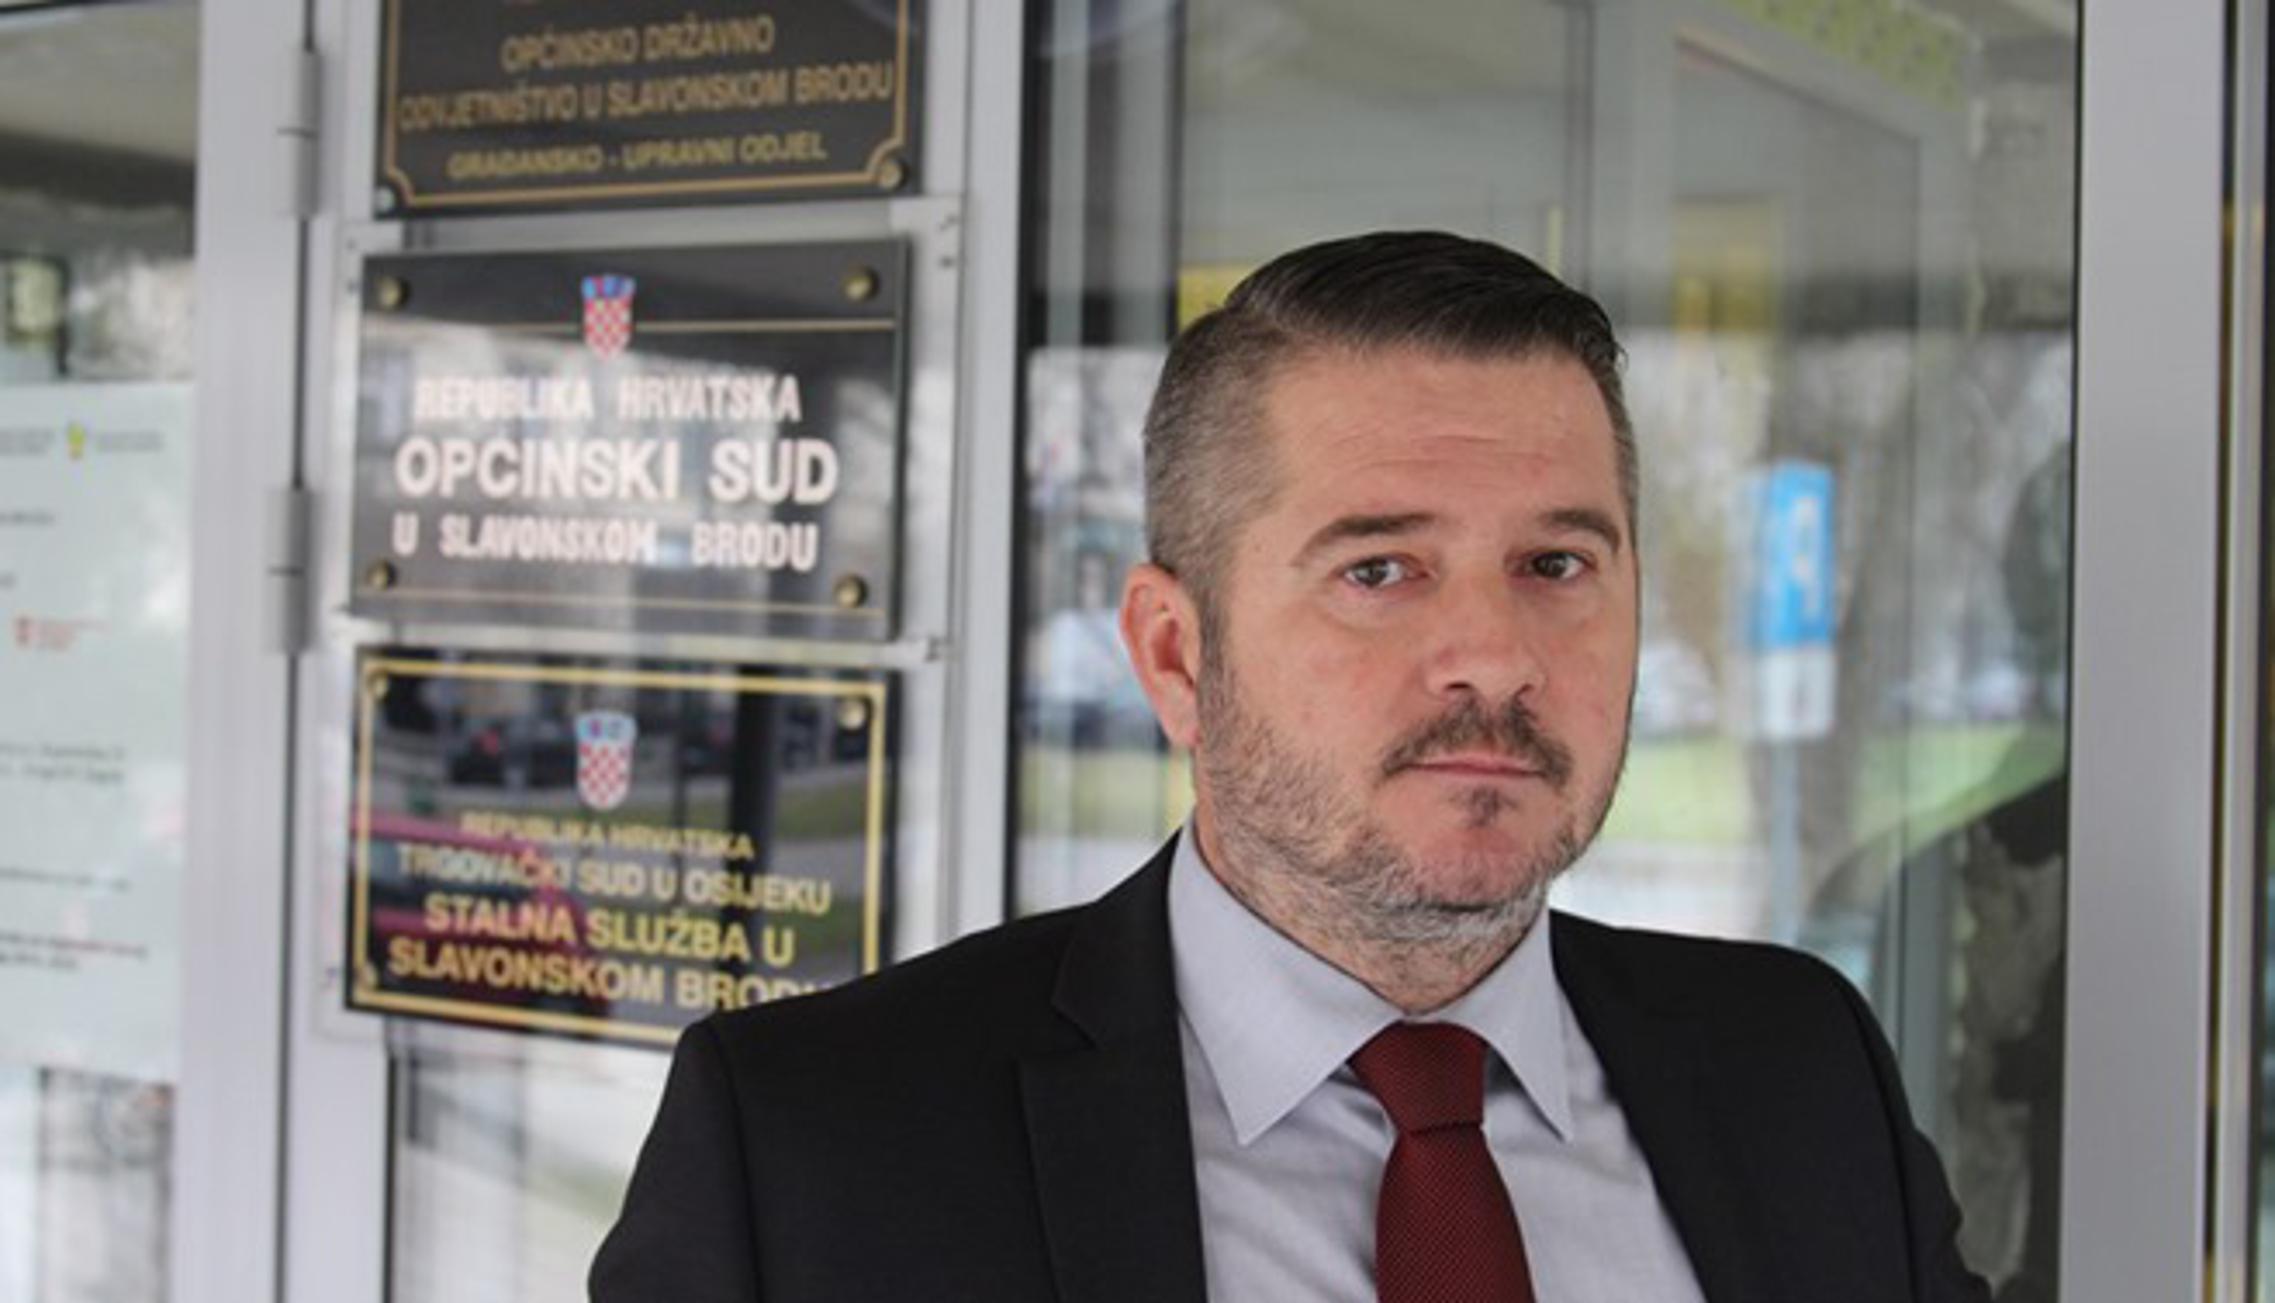 Predsjednik Općinskog suda Slavonski Brod, Vedran Pavelić